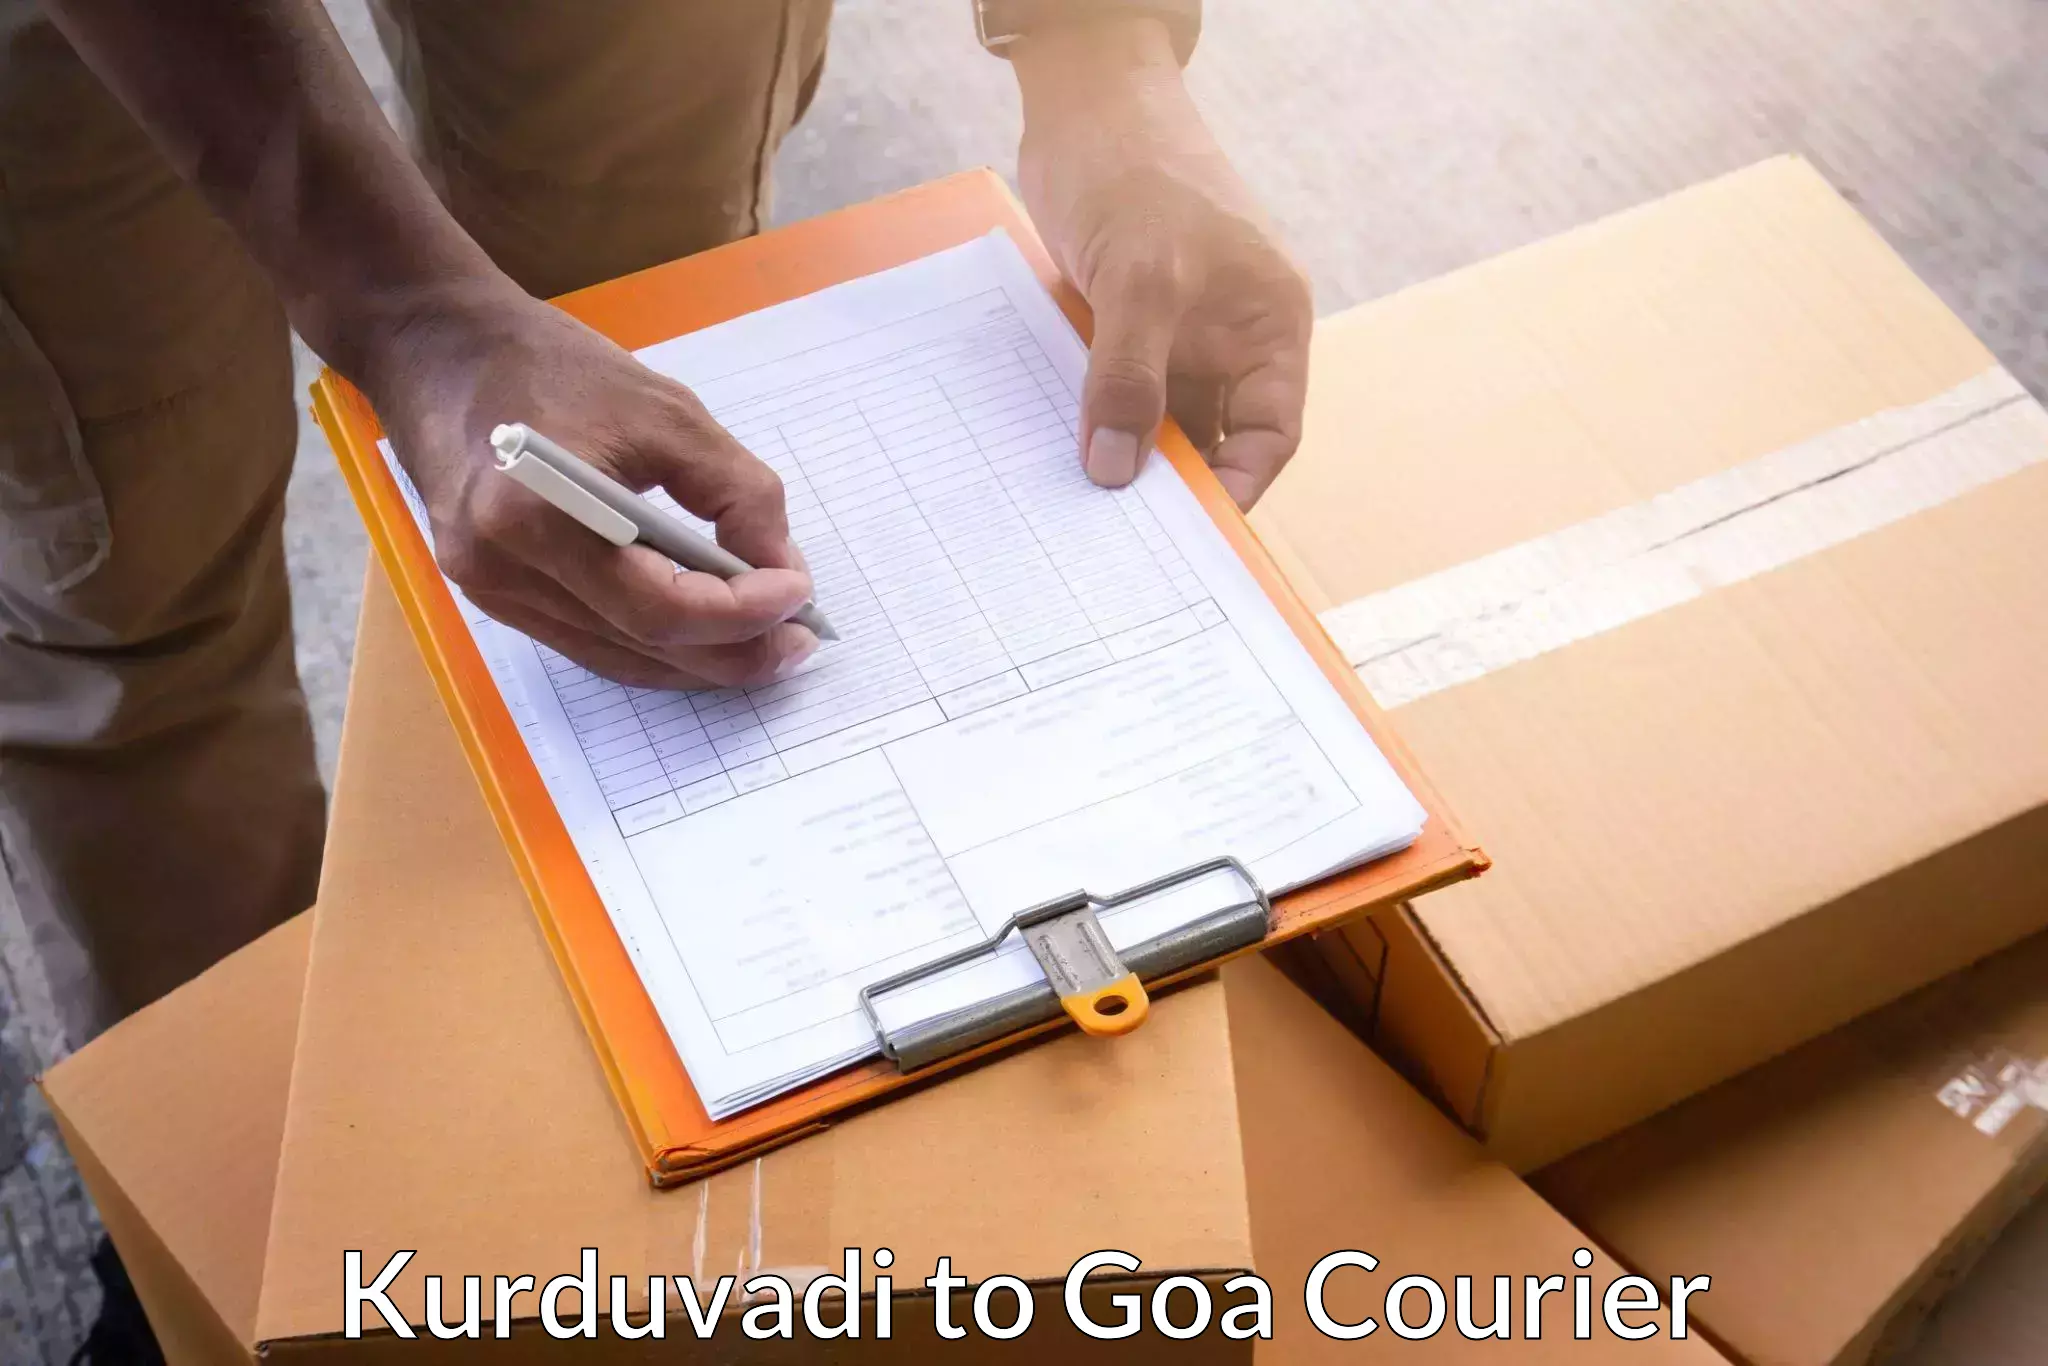 Reliable courier services Kurduvadi to Goa